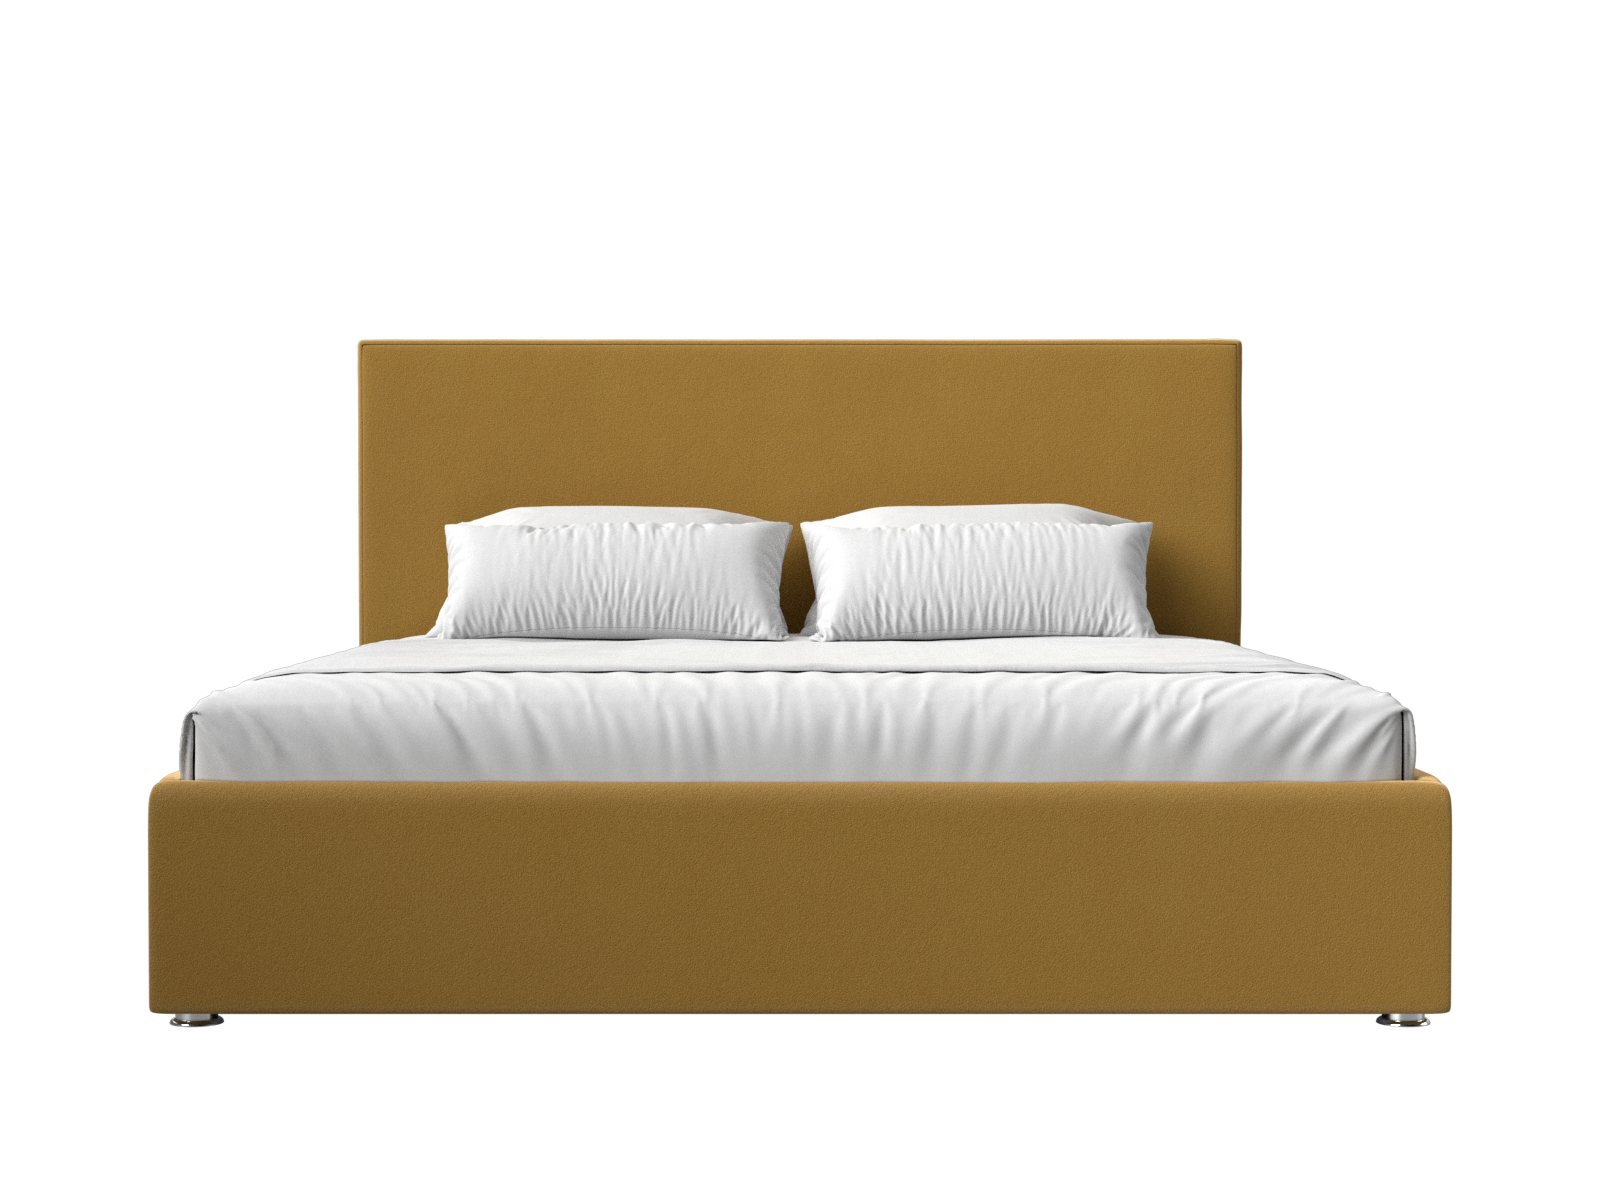 Интерьерная кровать Кариба 200 (Желтый)